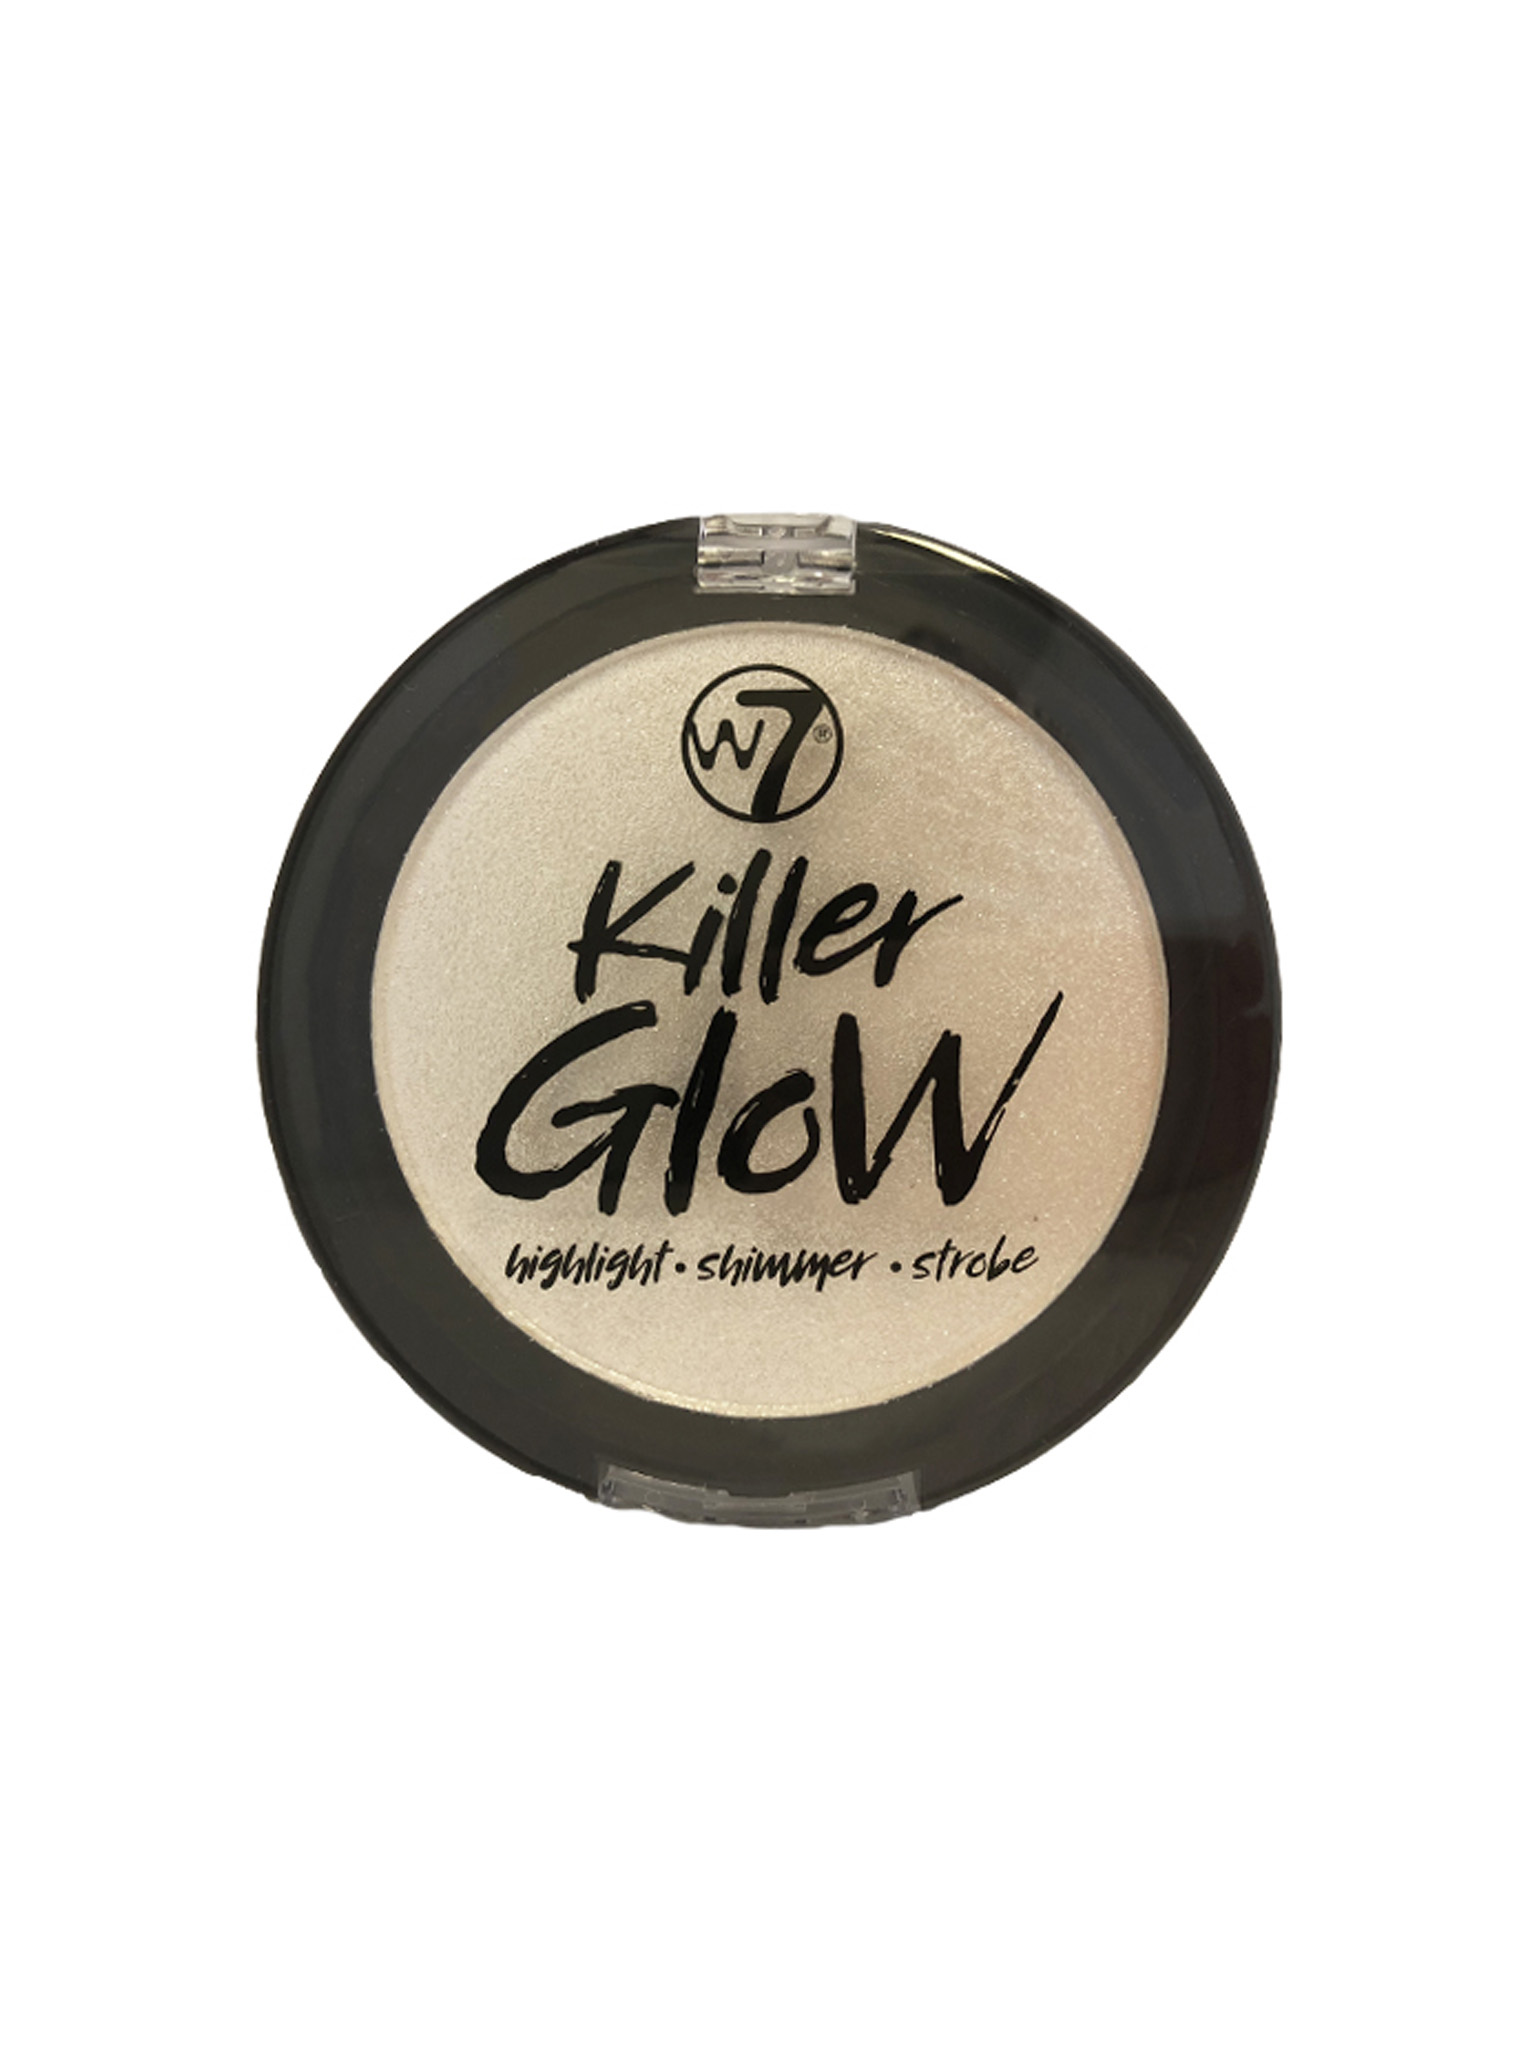 W7 Killer Glow Highlighter / Shimmer Crime Sheen